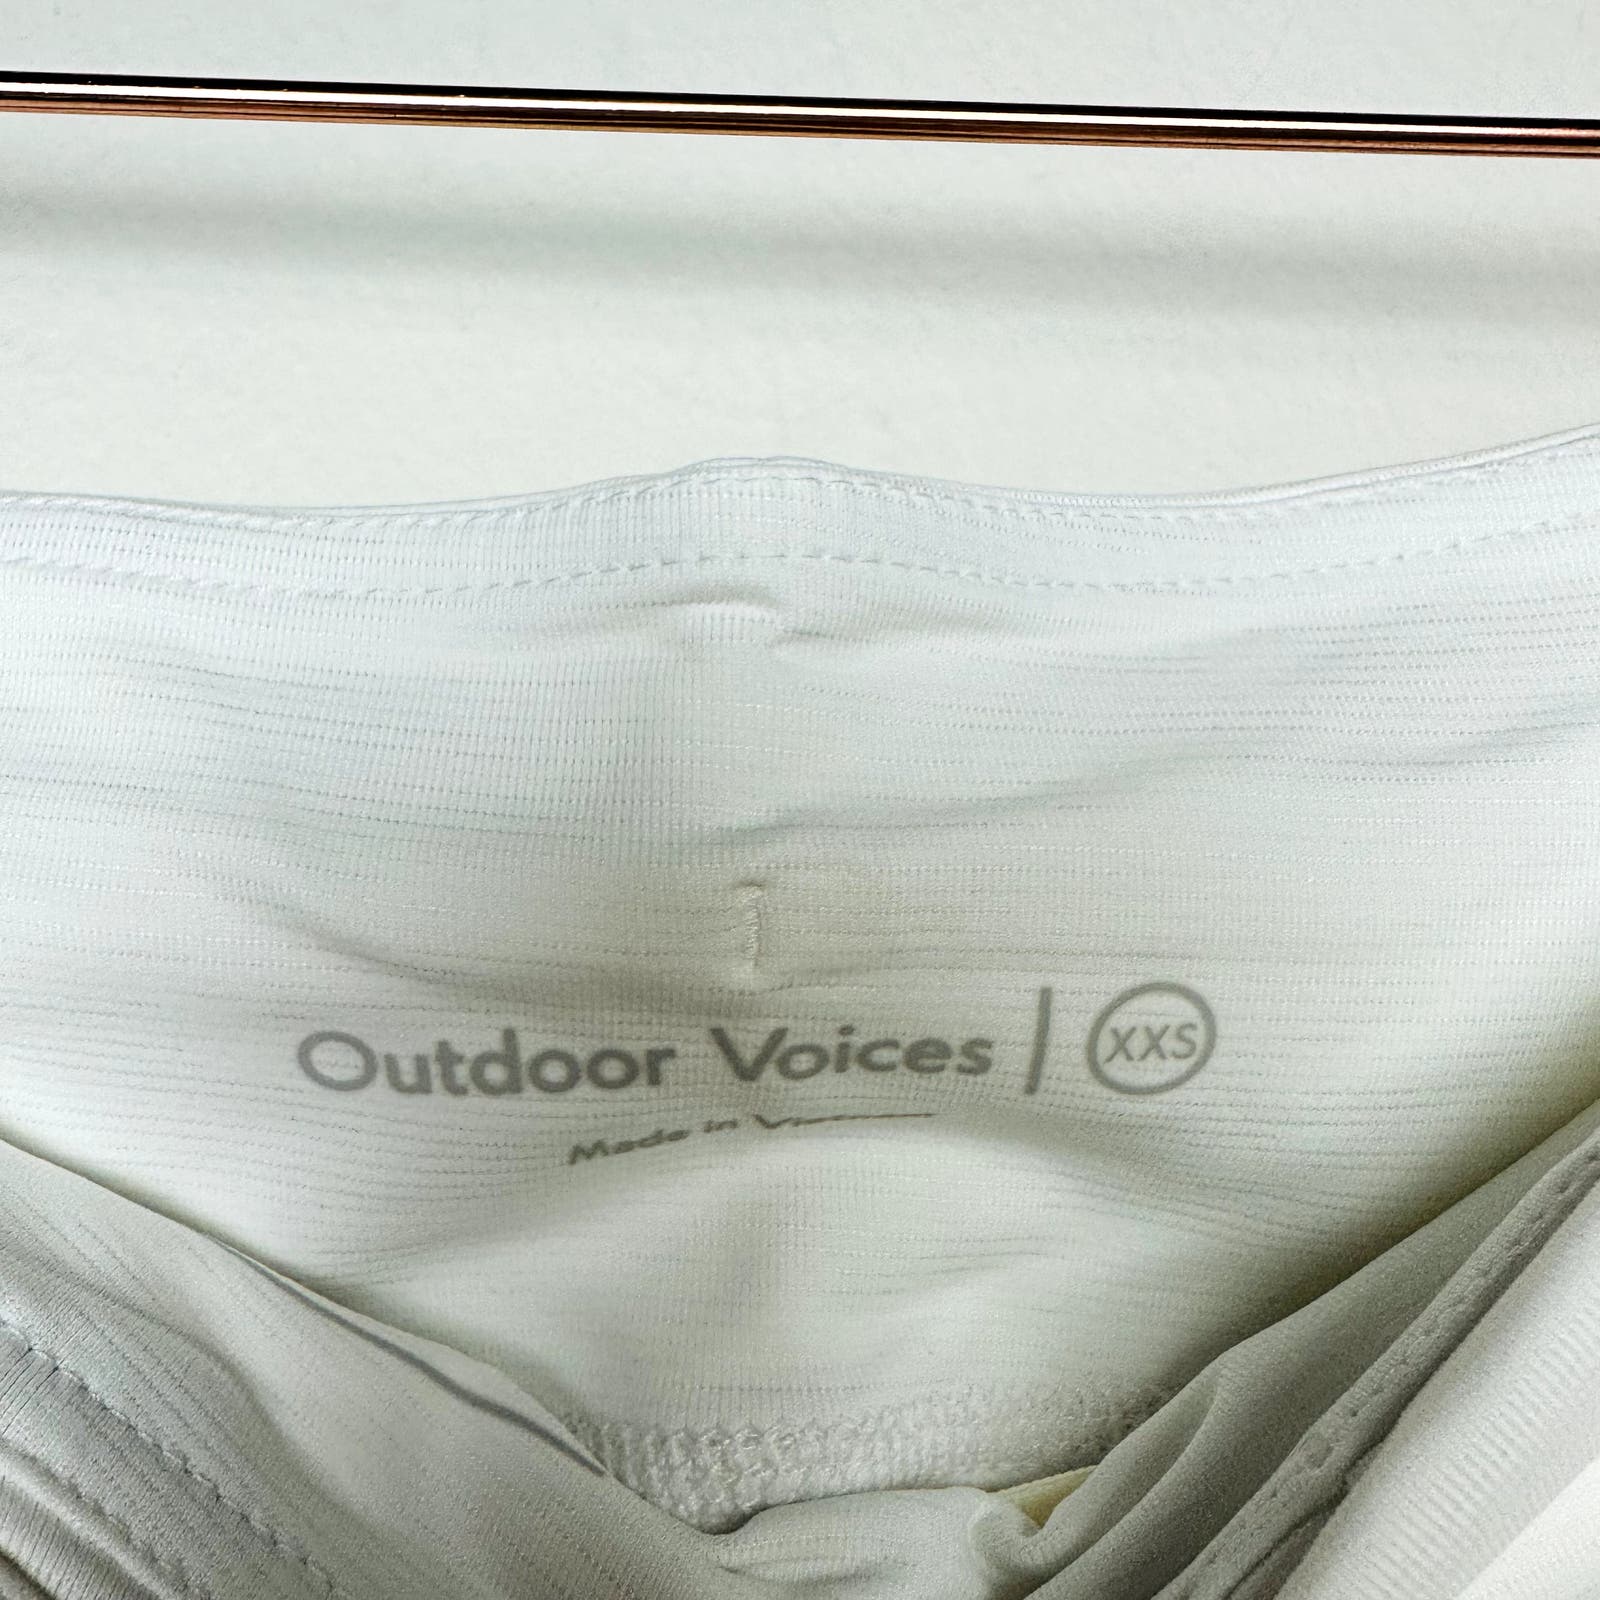 Outdoor Voices NWT White Hudson 4-inch Skort Size 2XS